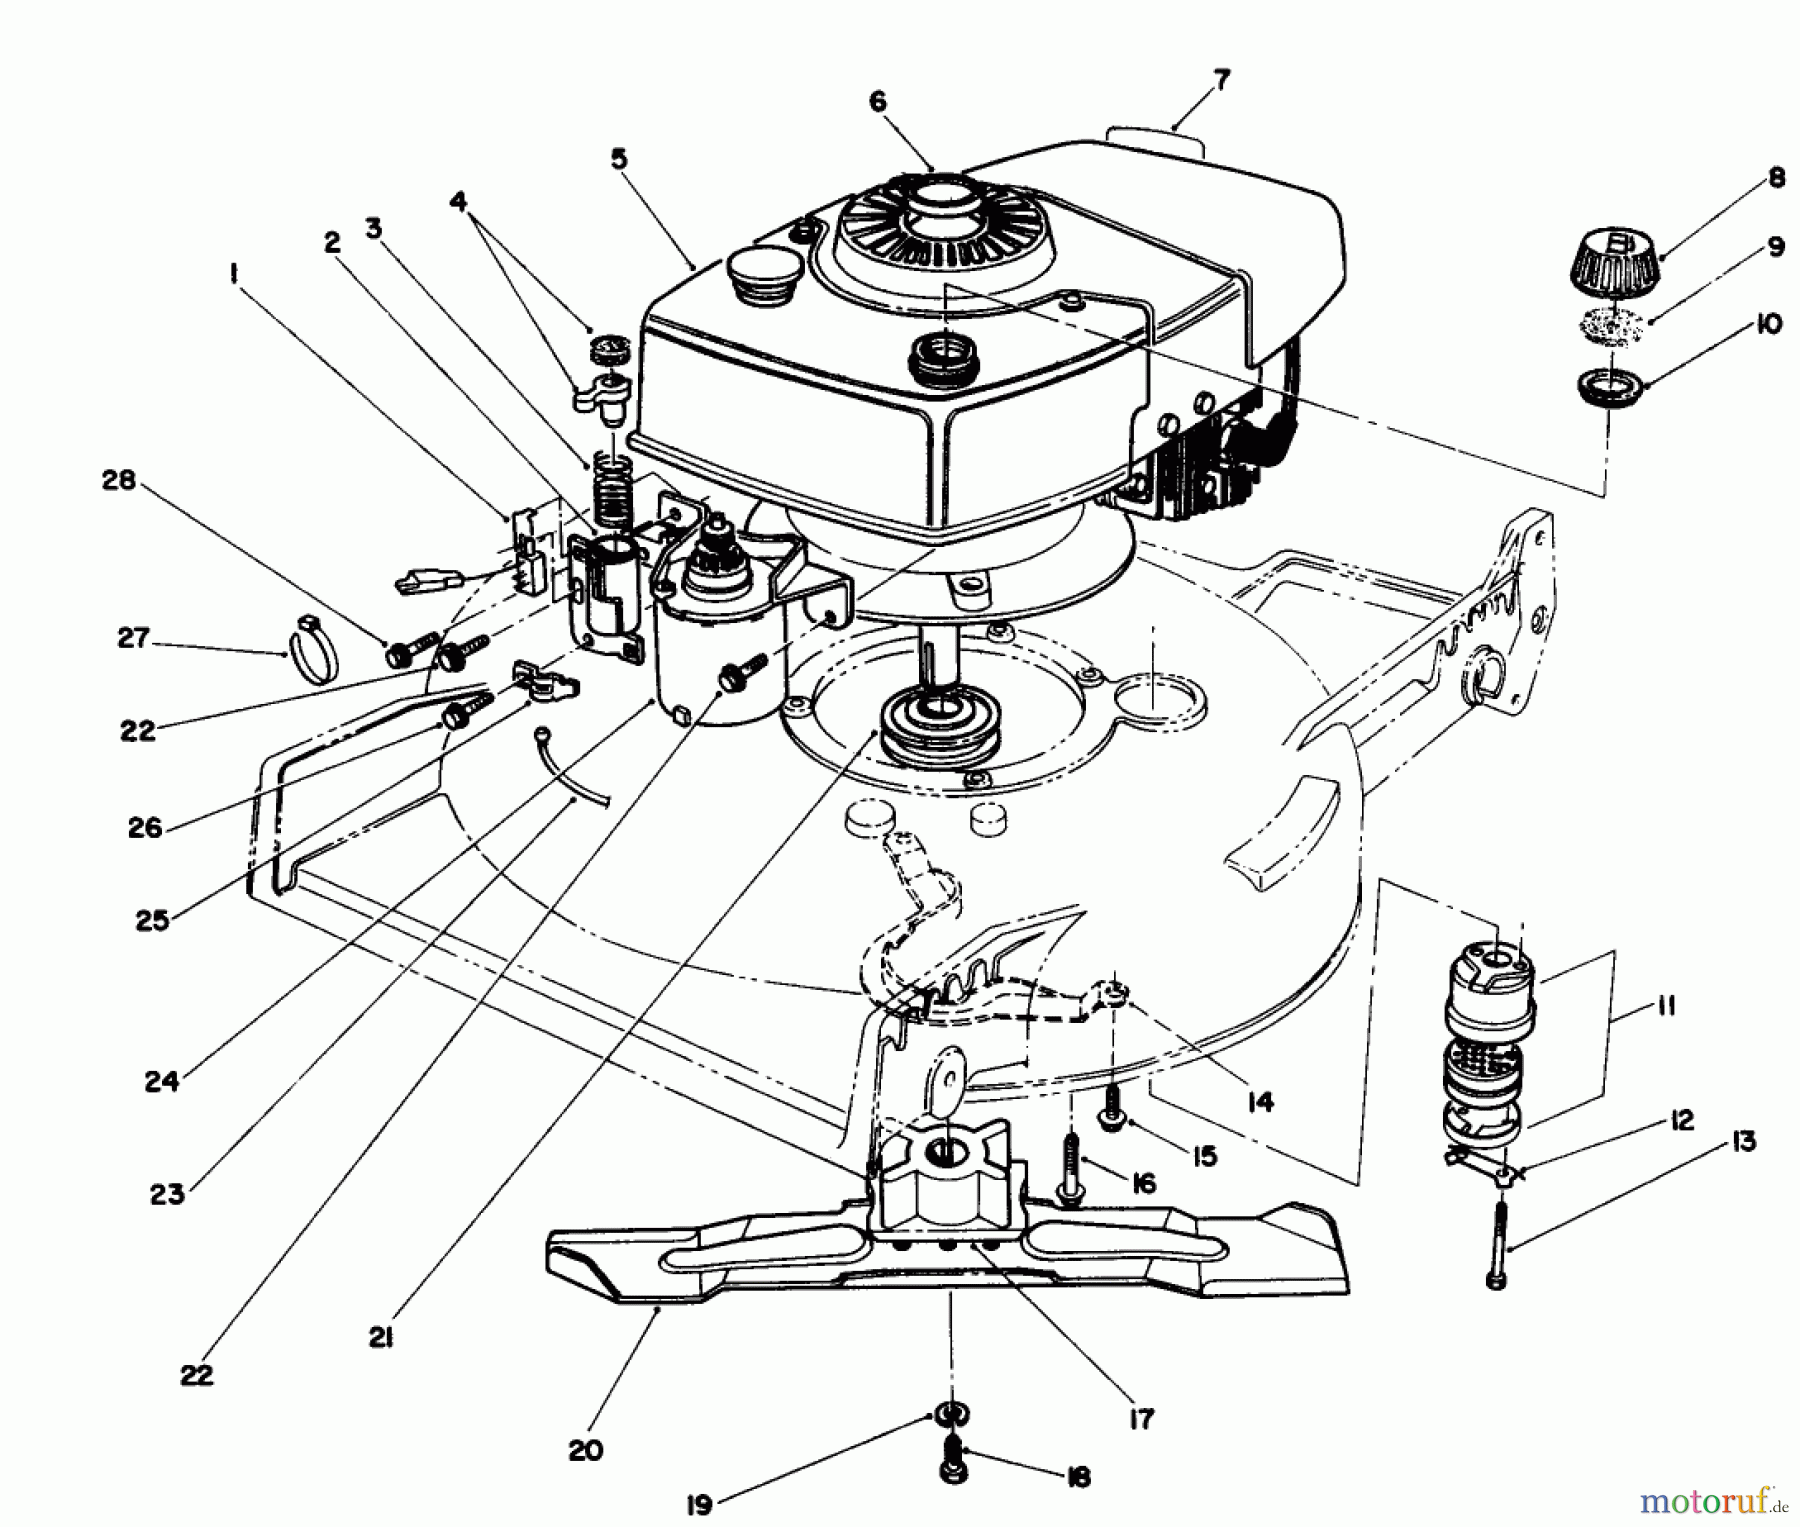  Toro Neu Mowers, Walk-Behind Seite 1 20677 - Toro Lawnmower, 1990 (0000001-0002101) ENGINE ASSEMBLY